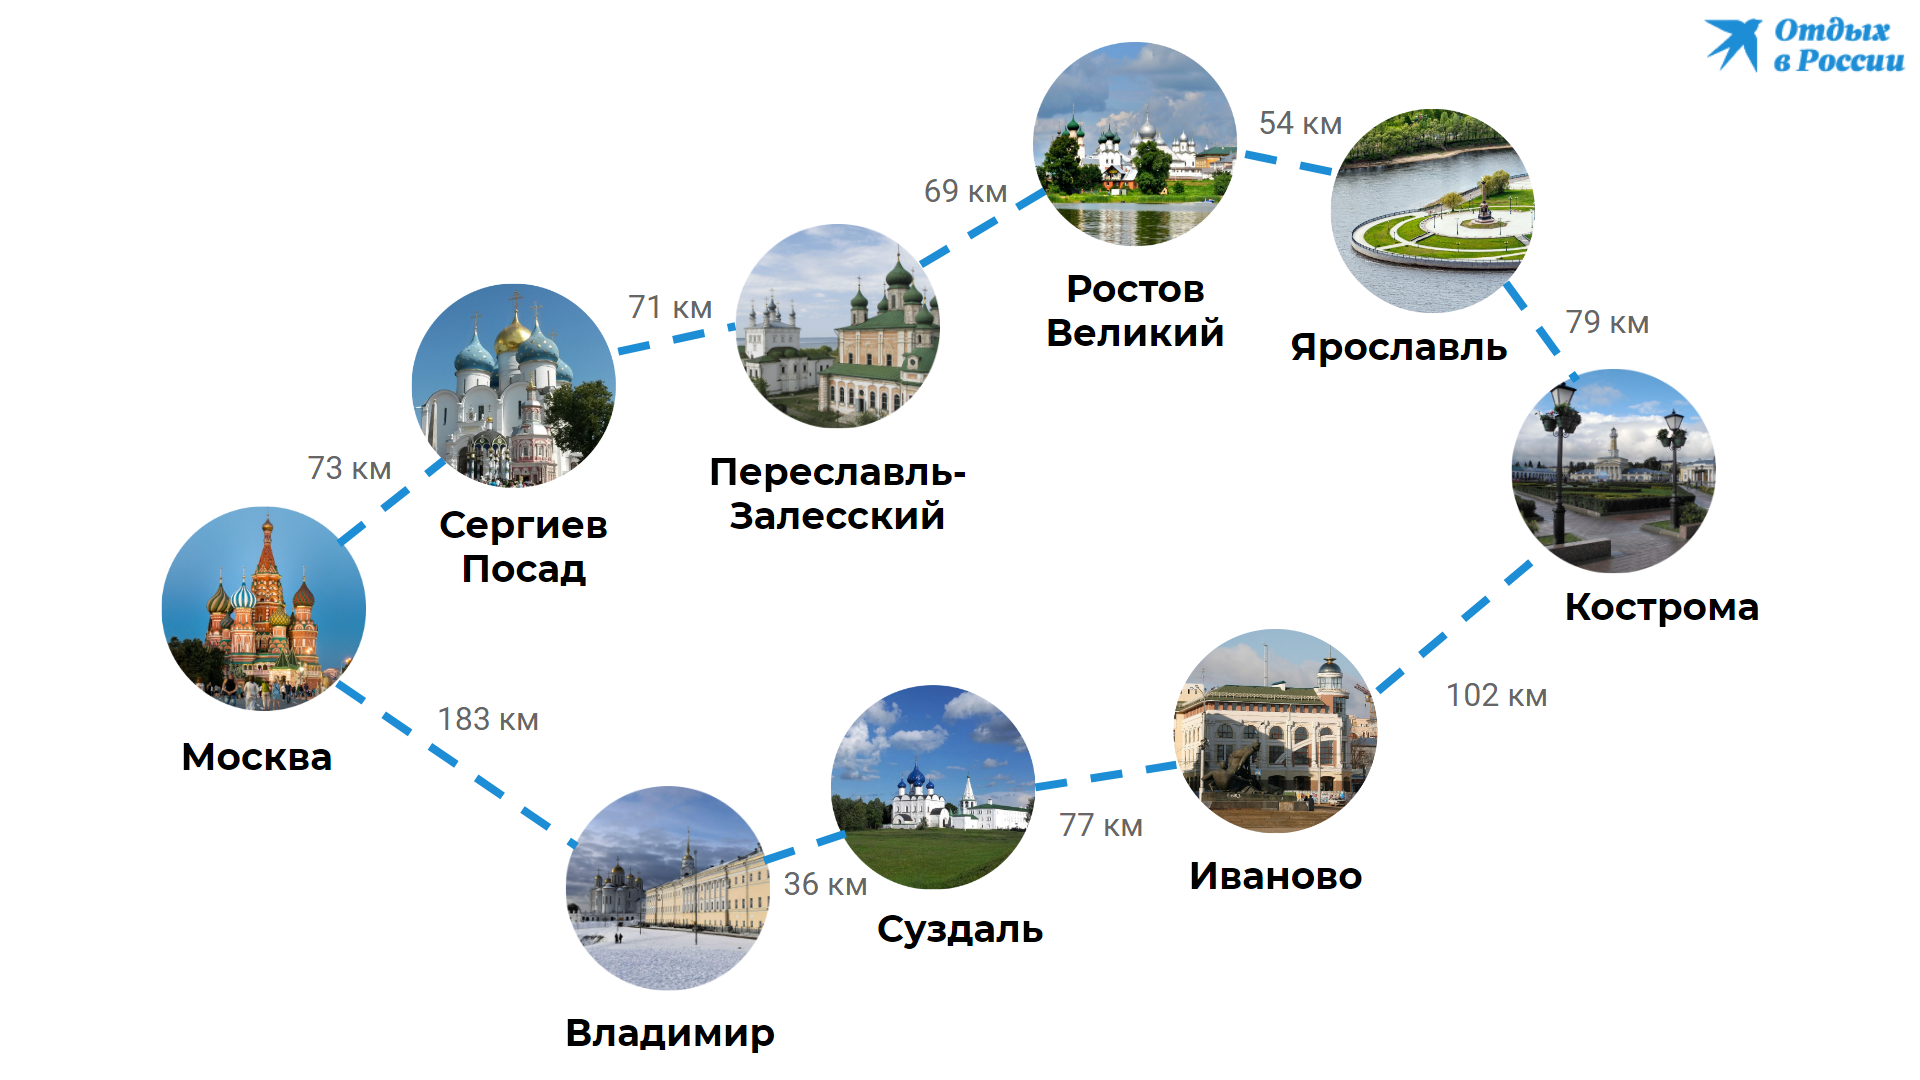 Куда поехать на неделю отдохнуть в россии? - туристический блог ласус